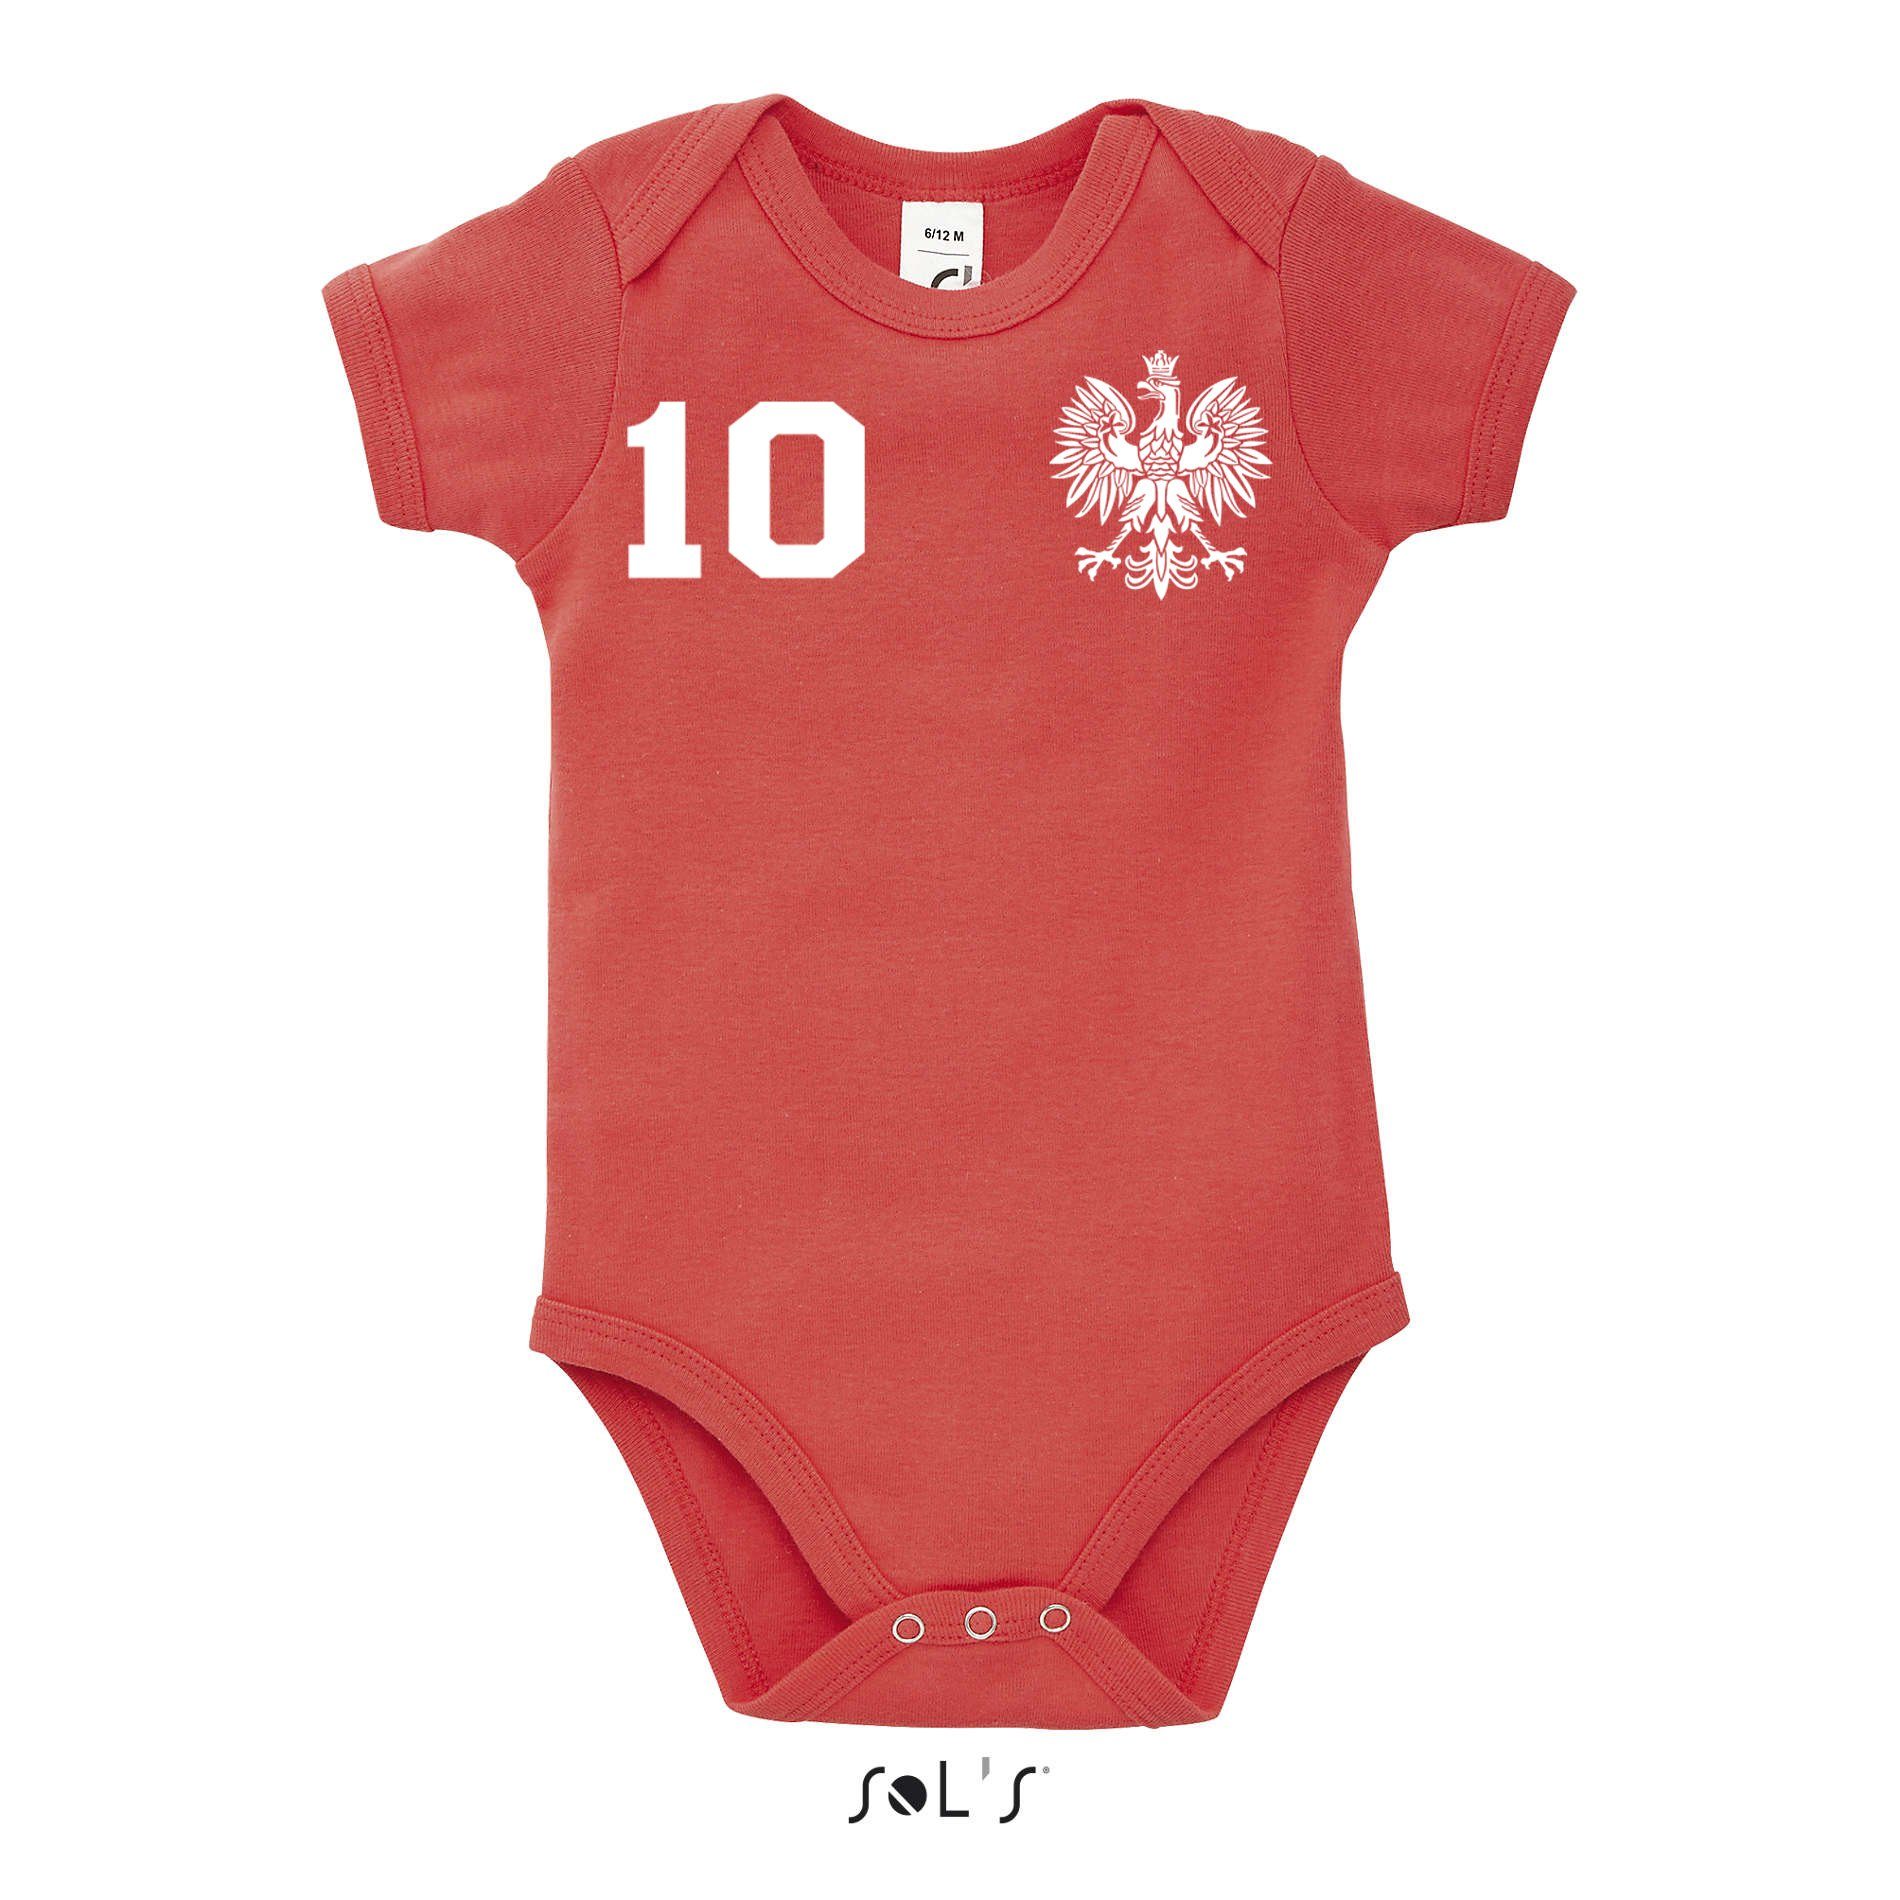 Blondie & Brownie Europa Fußball Polen Meister EM Kinder Polska Baby Weiss/Rot WM Sport Trikot Strampler